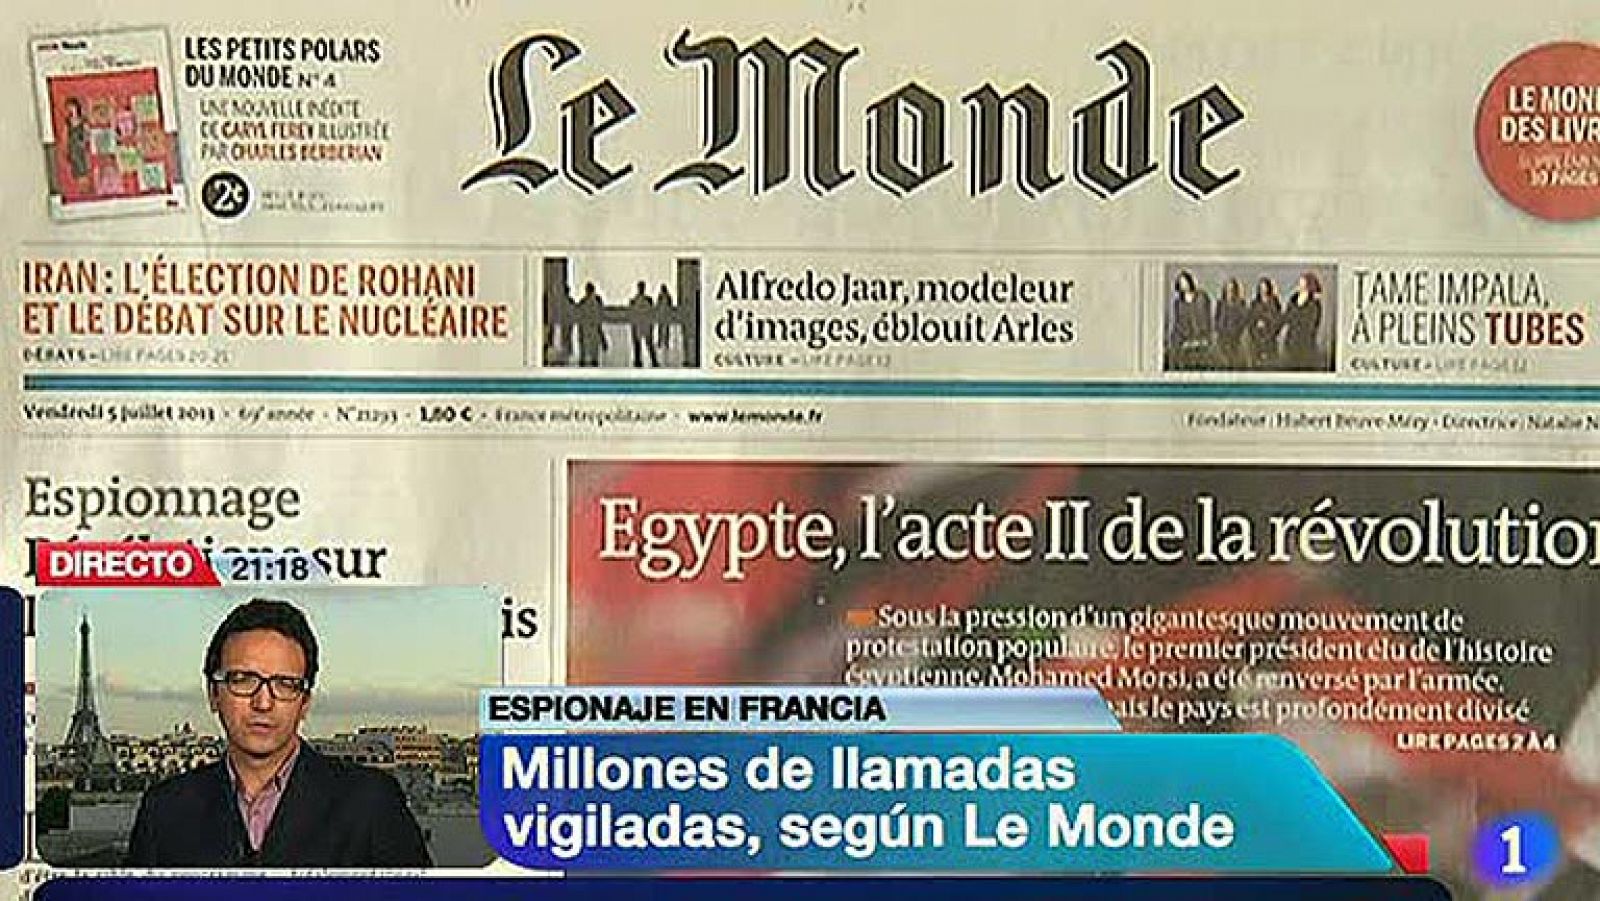 Francia cuenta con un sistema de espionaje de comunicaciones que escruta en su territorio millones de llamadas de teléfono, correos electrónicos o mensajes de móvil bajo un marco legal poco claro, según ha revelado el diario Le Monde.